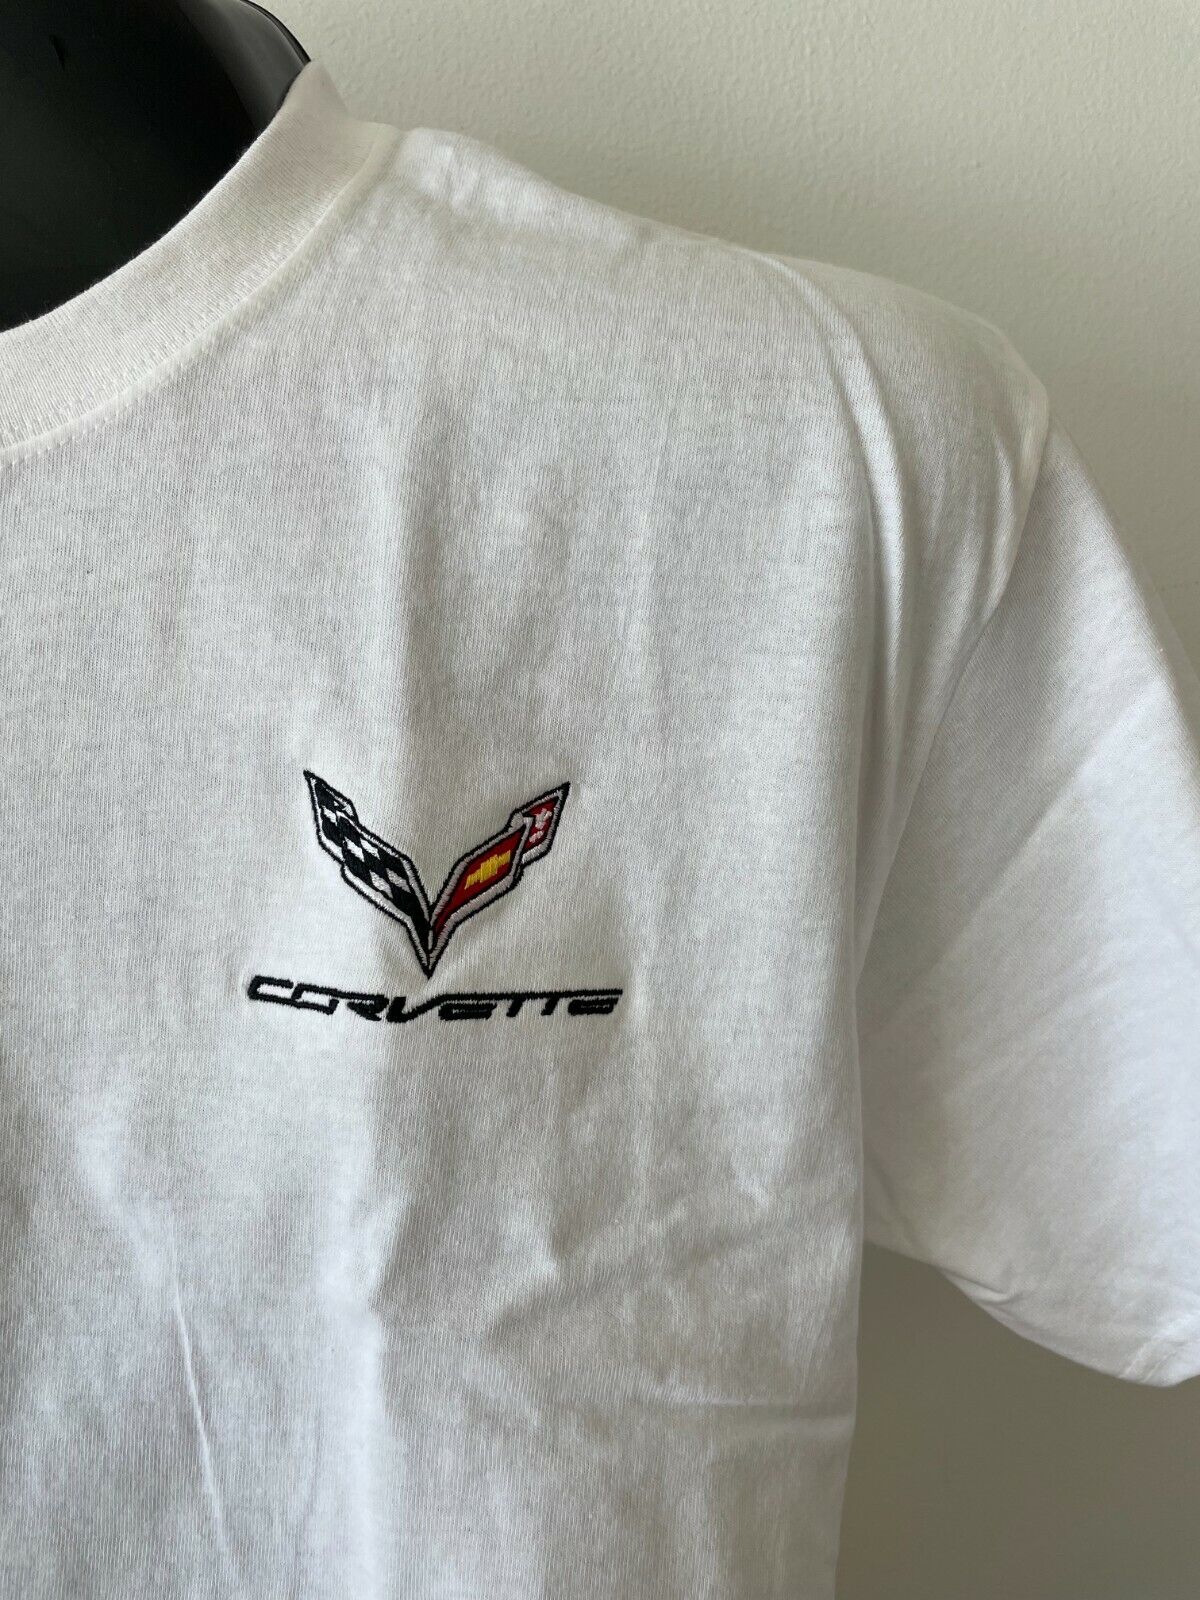 Mens C7 Corvette T-Shirt Red, White, OR Black